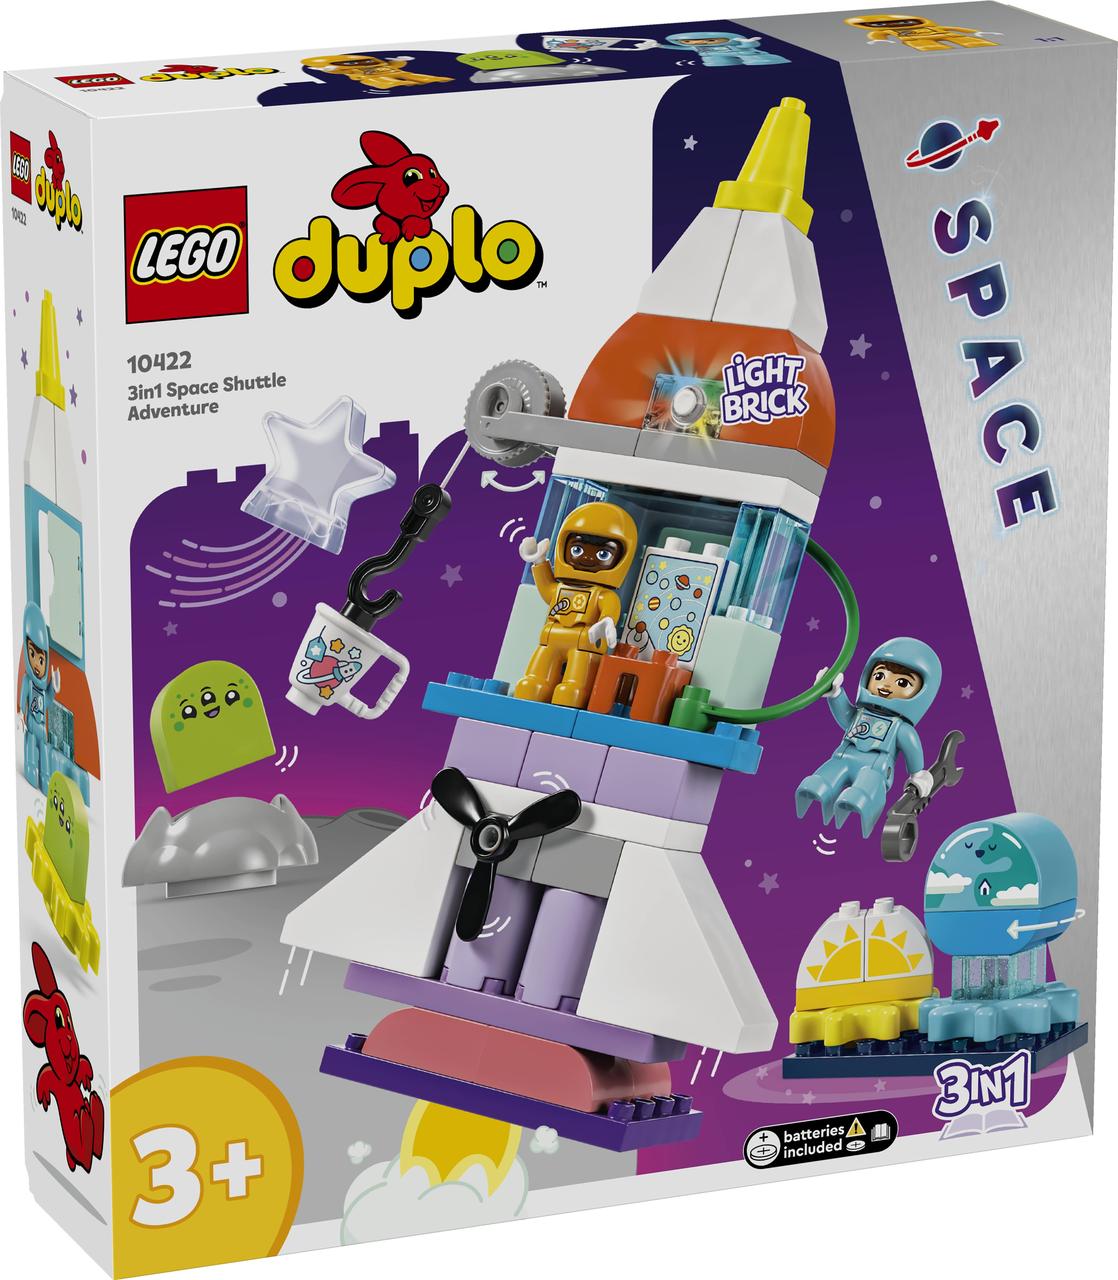 Lego Duplo Конструктор Пригоди на космічному шатлі 3-в-1 10422